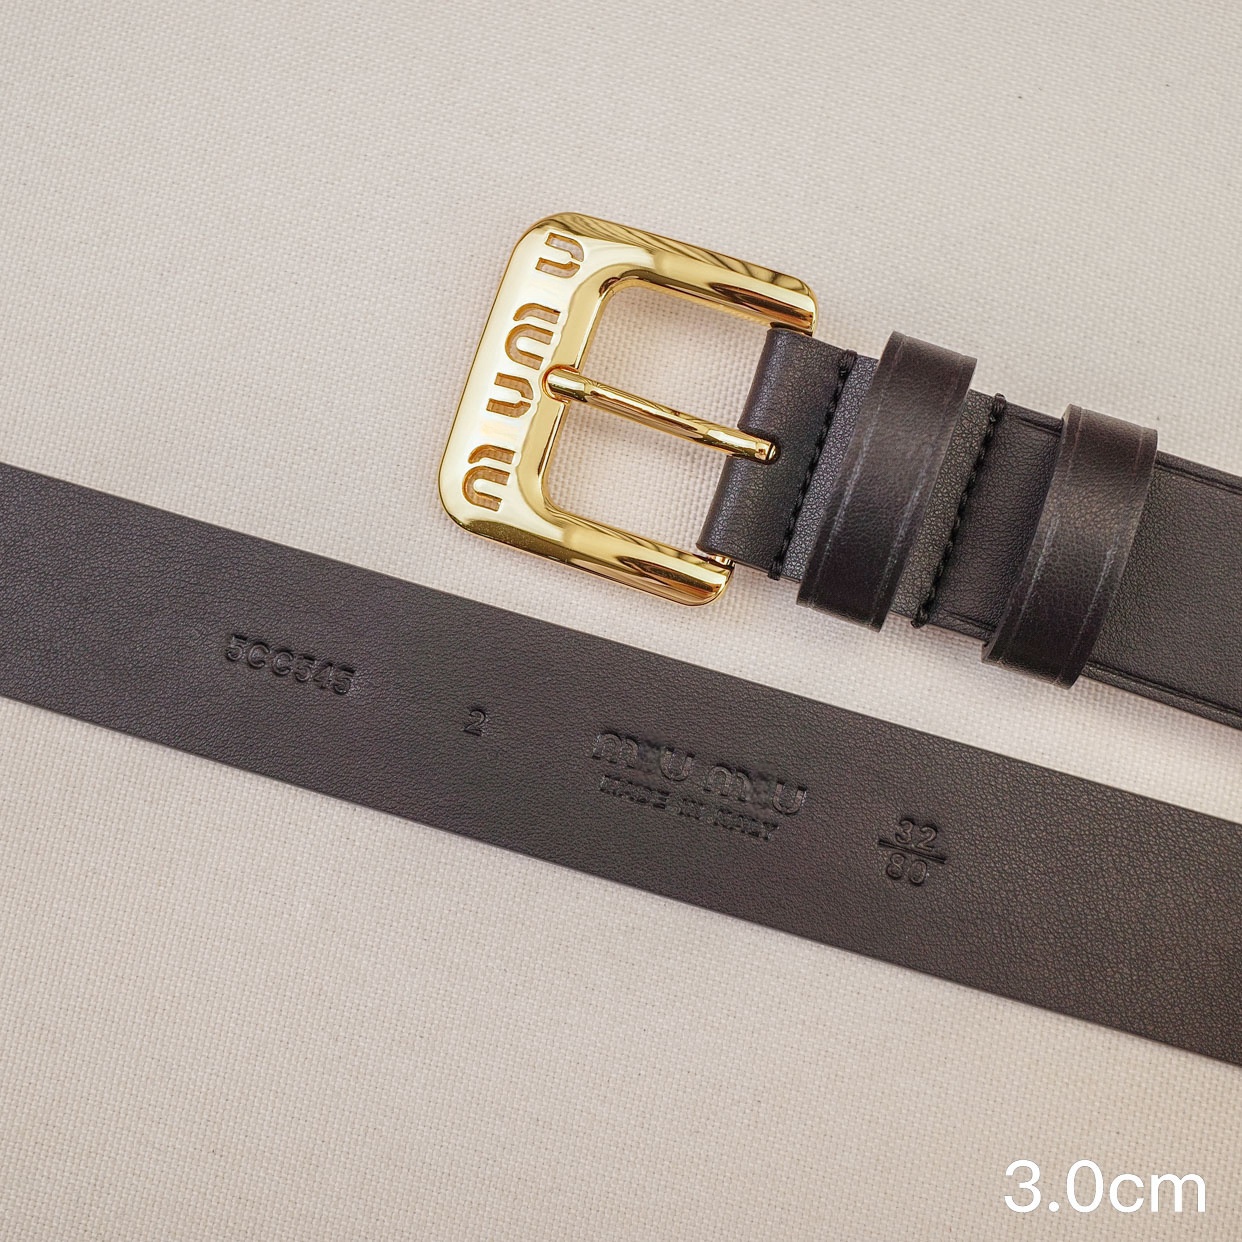 Cinturón de la mujer Fashion Belts de cuero genuino Hombres Corquía Cinturón Ancho de 3 cm Hebilla de la aguja Accesorios al aire libre